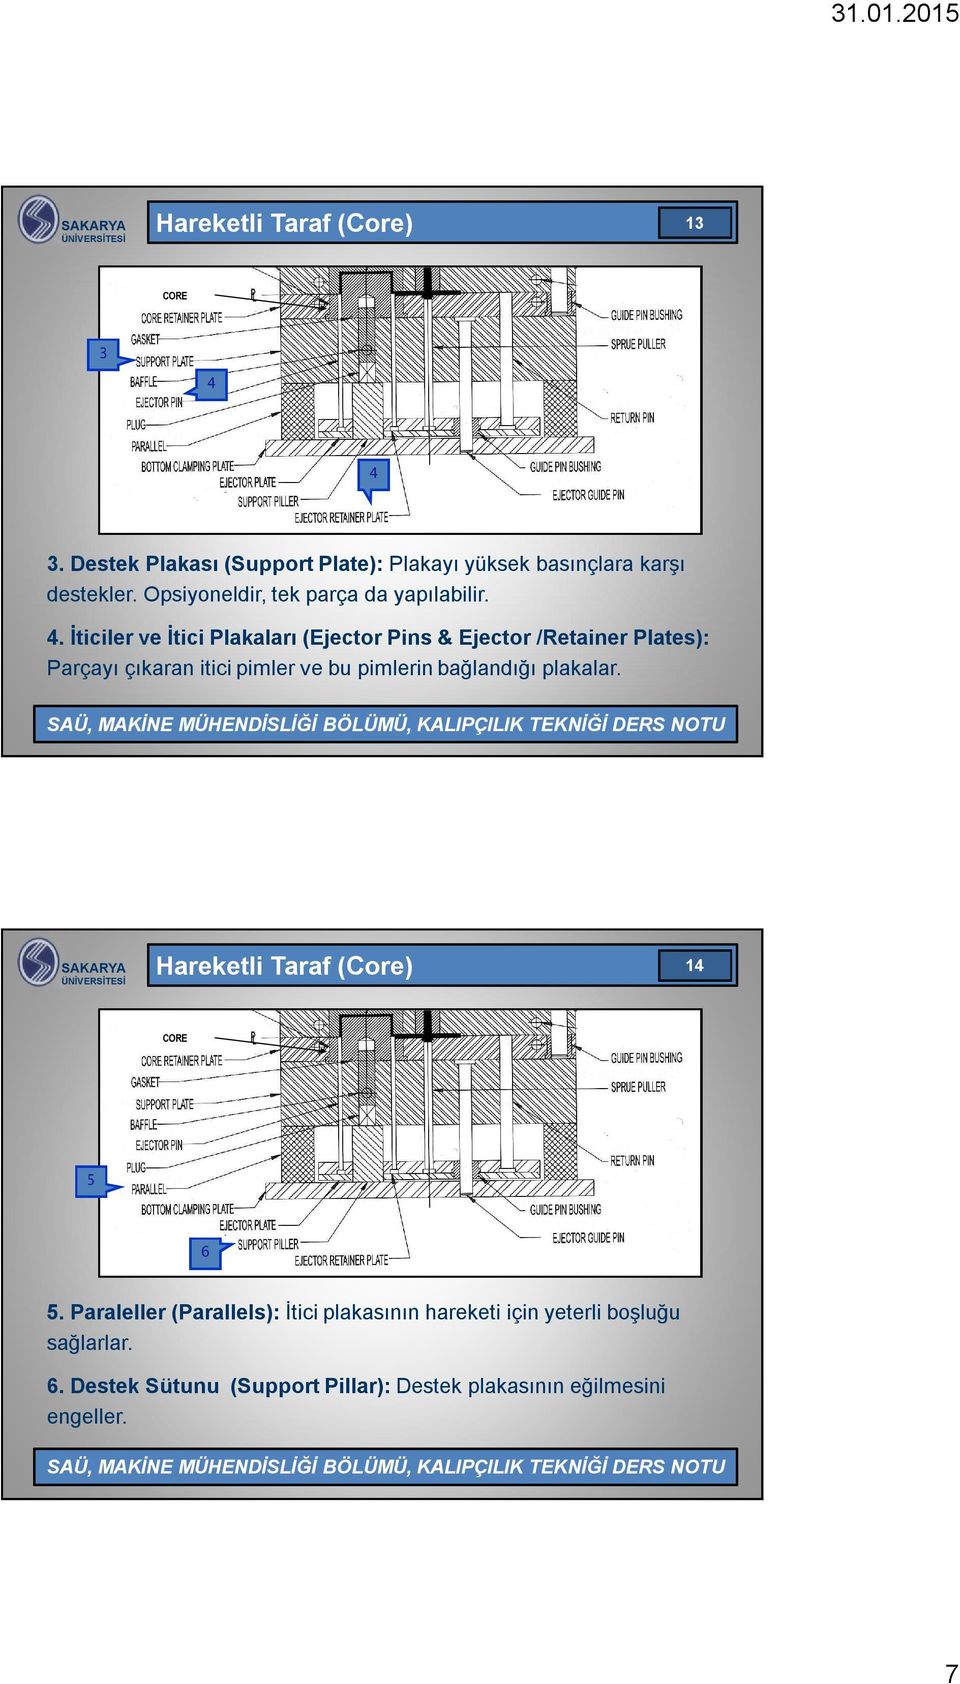 İticiler ve İtici Plakaları (Ejector Pins & Ejector /Retainer Plates): Parçayı çıkaran itici pimler ve bu pimlerin bağlandığı